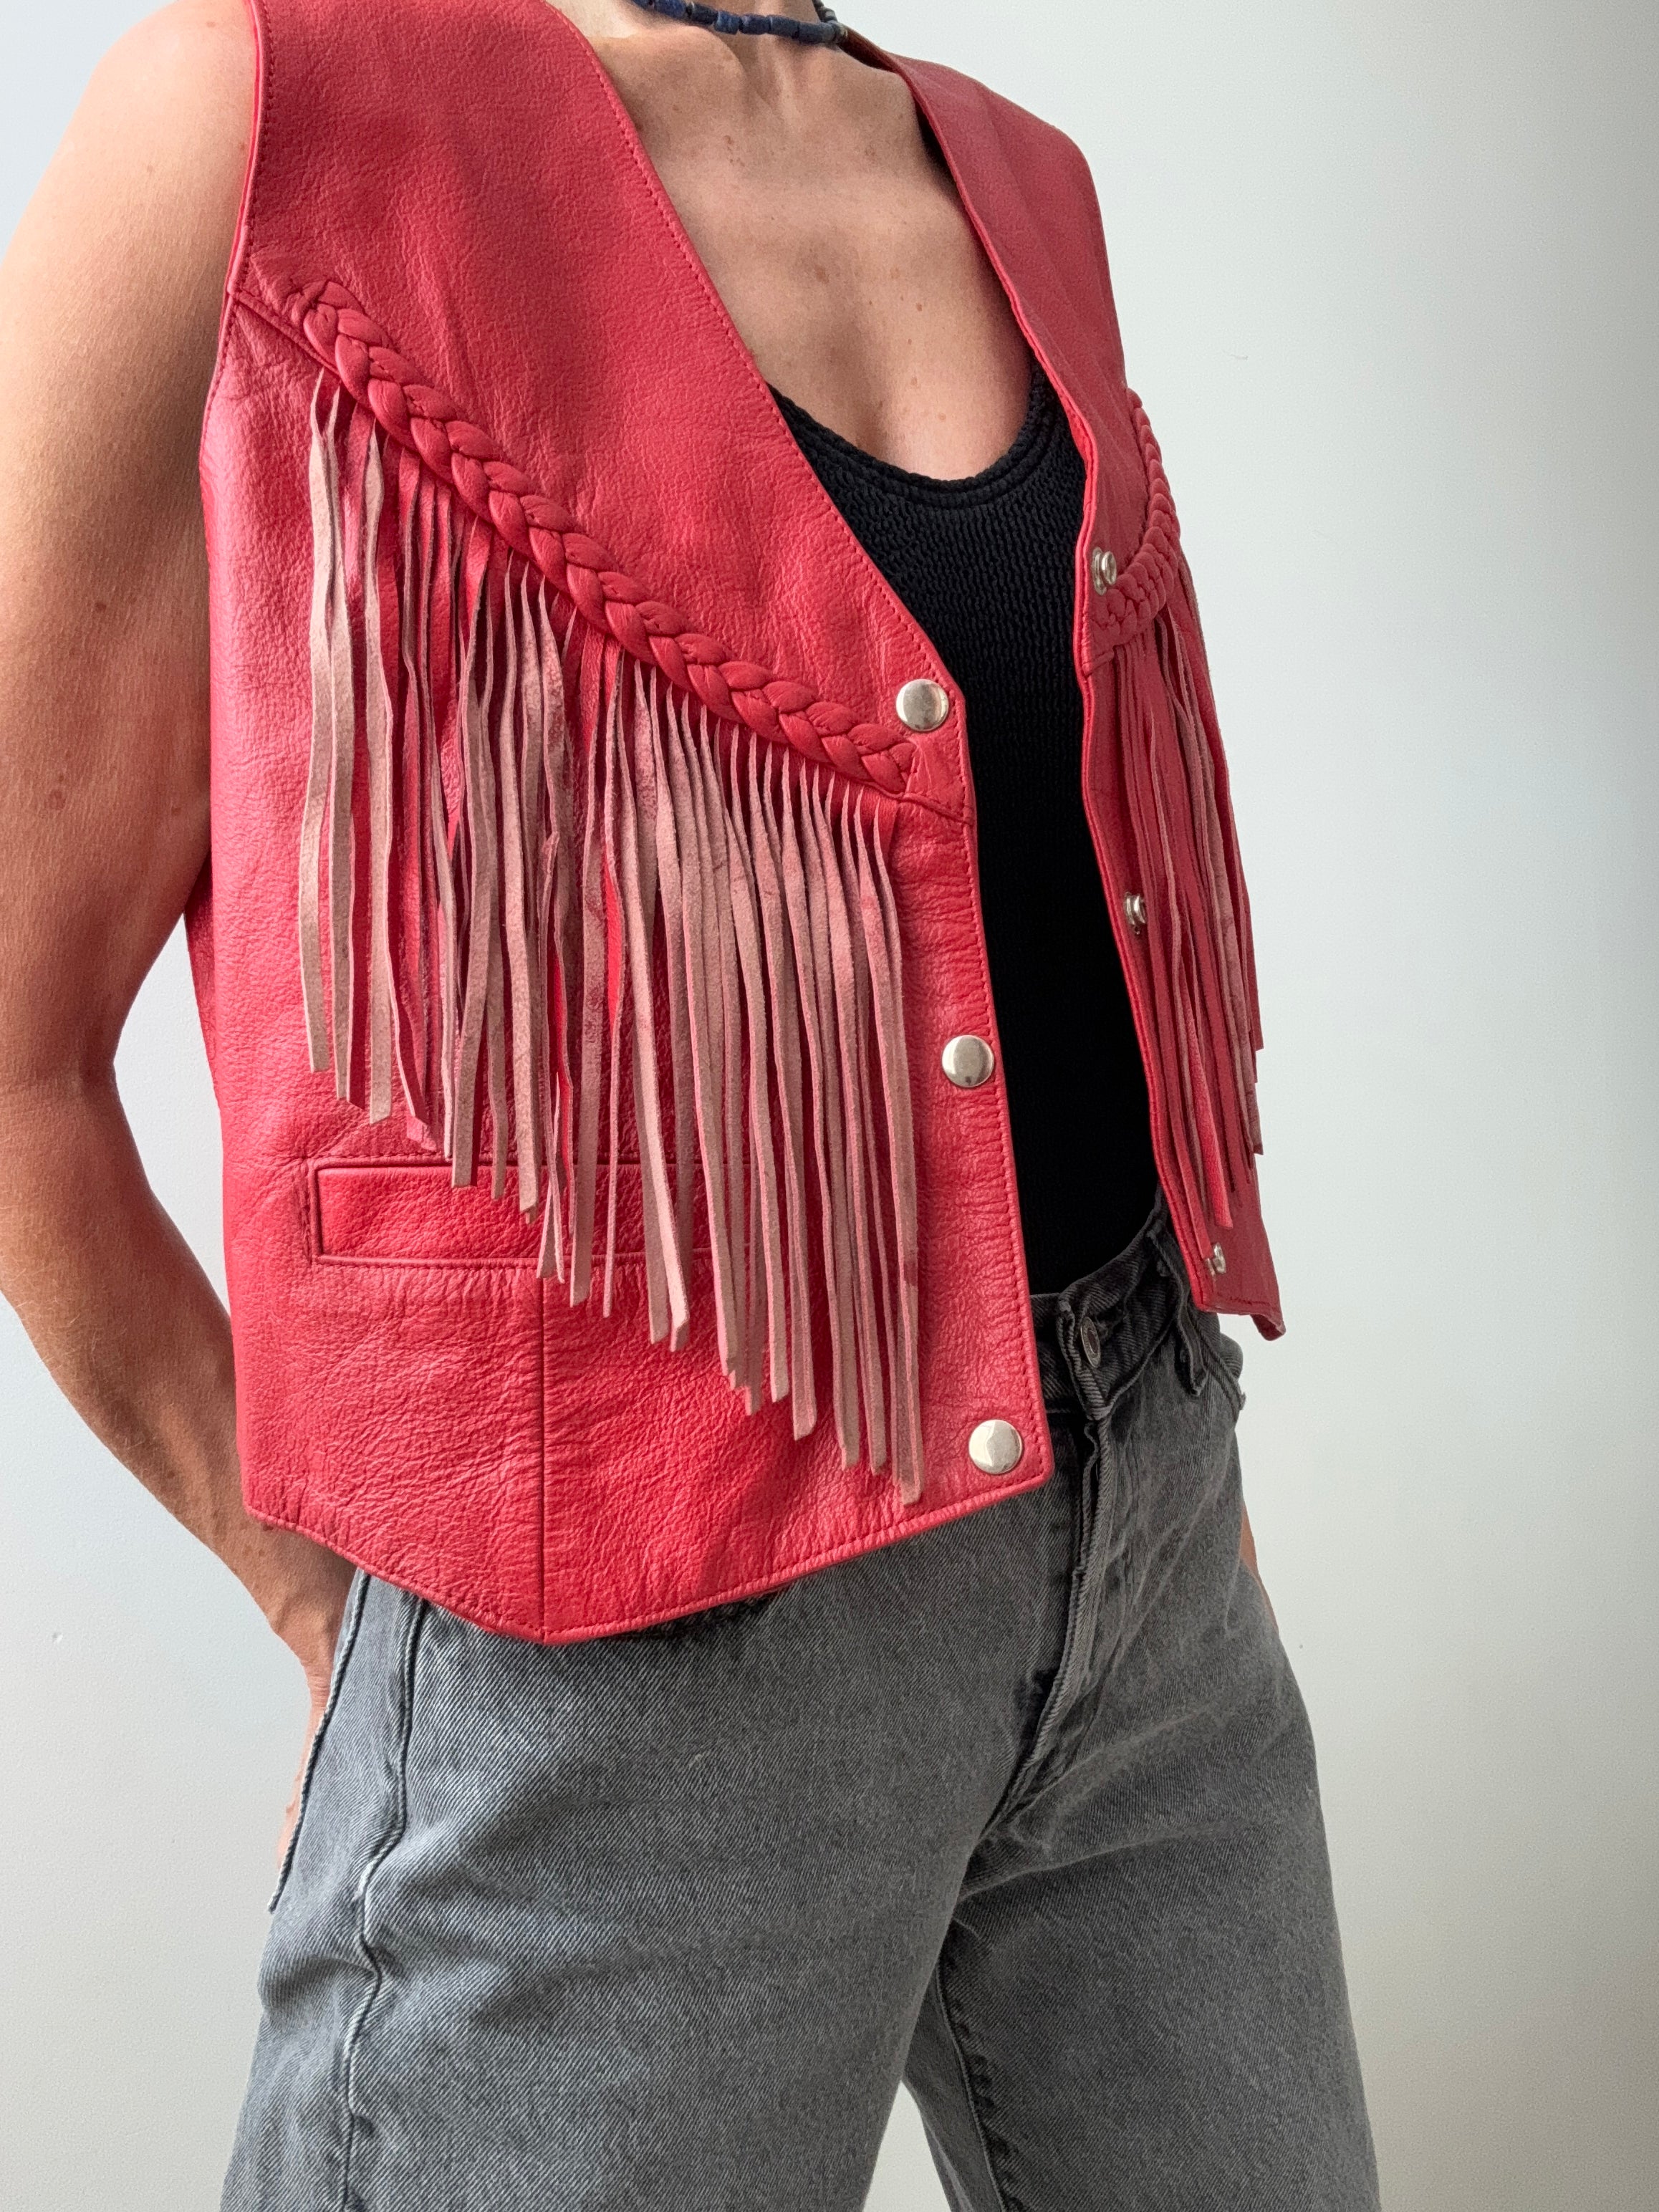 Future Nomads Vests Medium Vintage Tassel Red Leather Vest